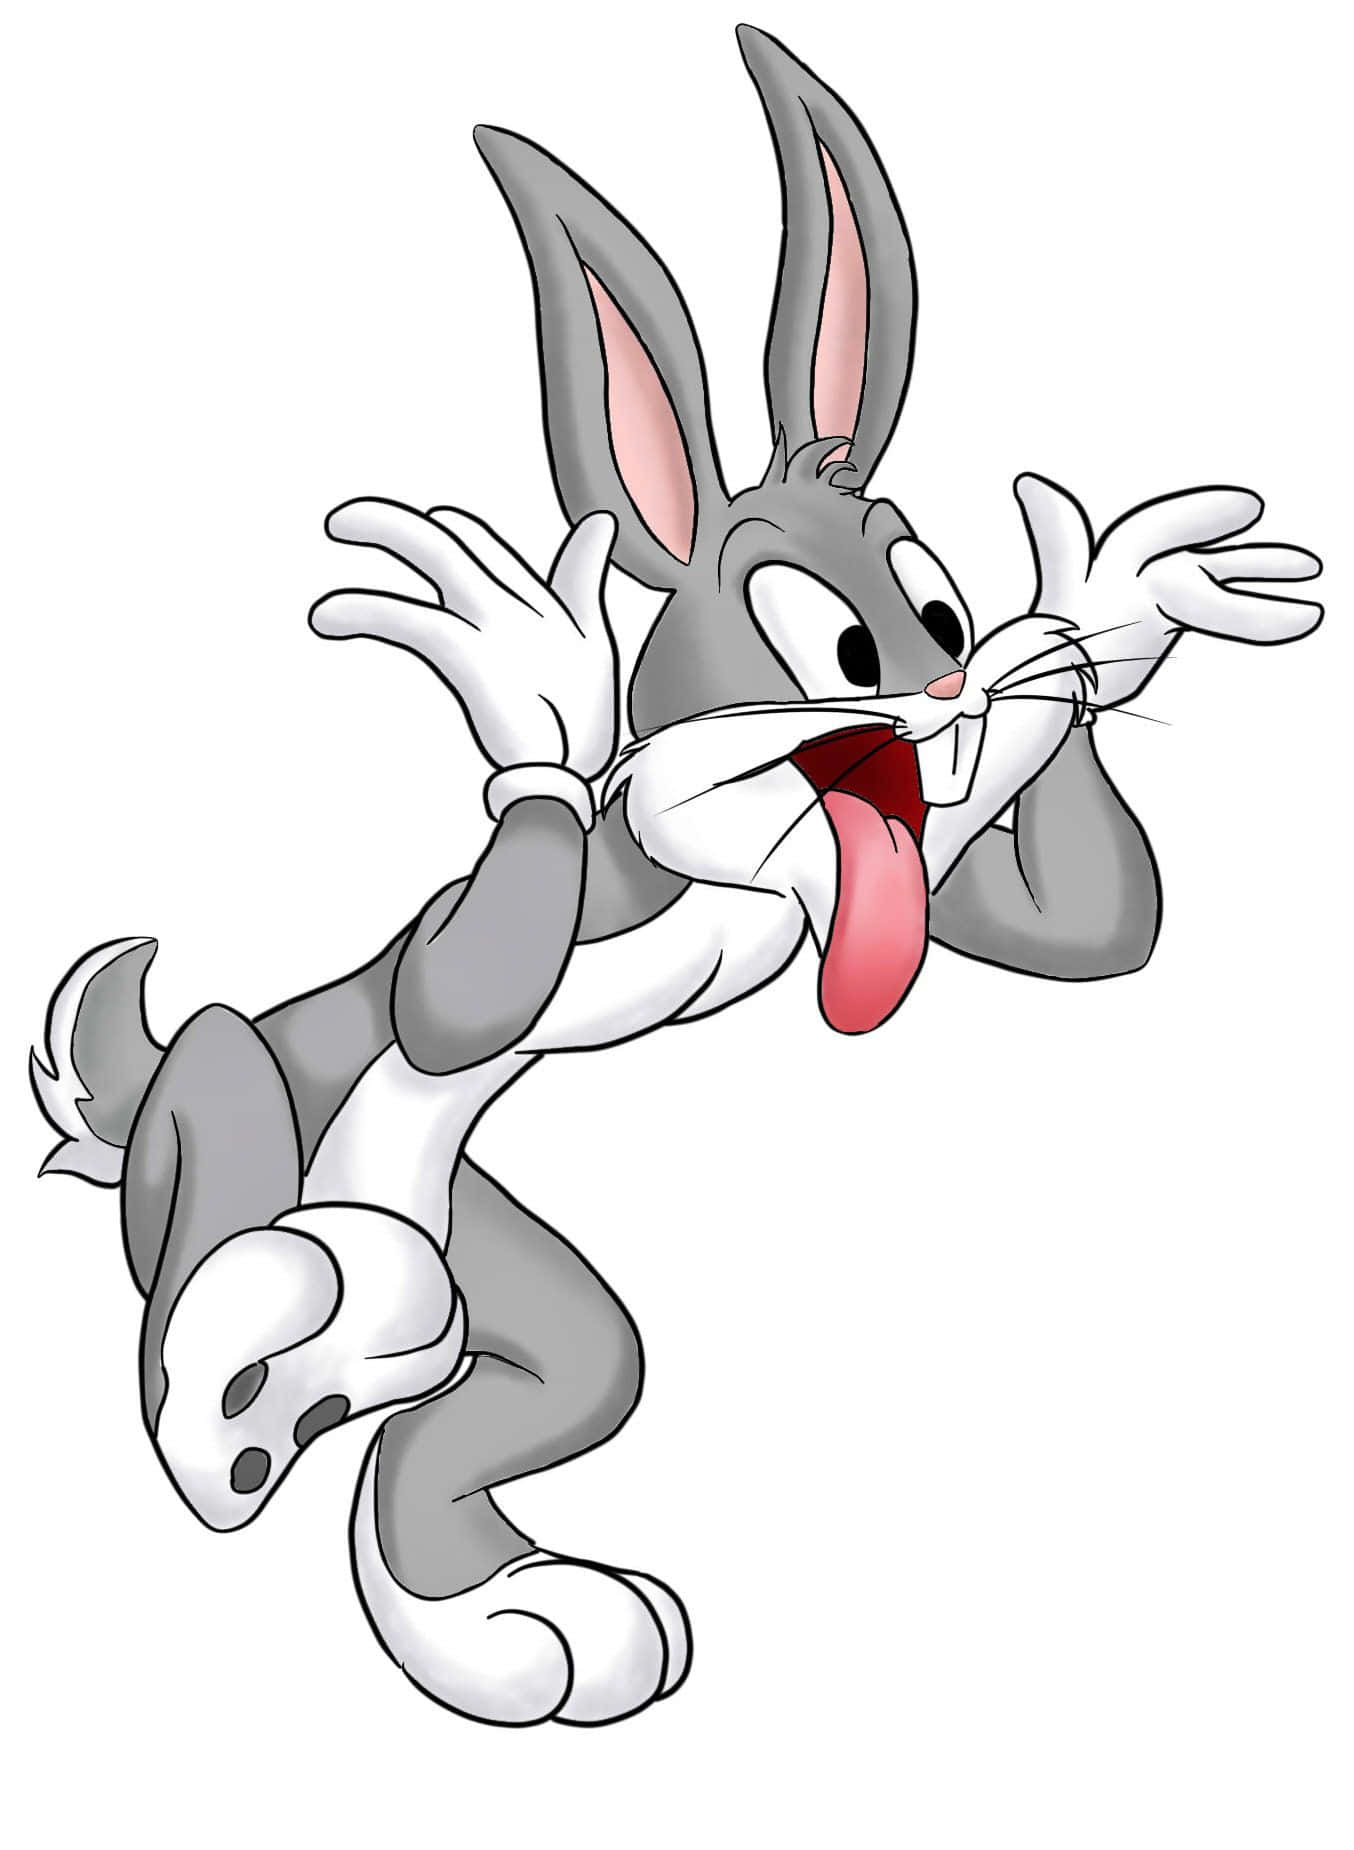 Uniscitia Bugs Bunny In Una Nuova Avventura Con Il Tuo Iphone Personale Sfondo